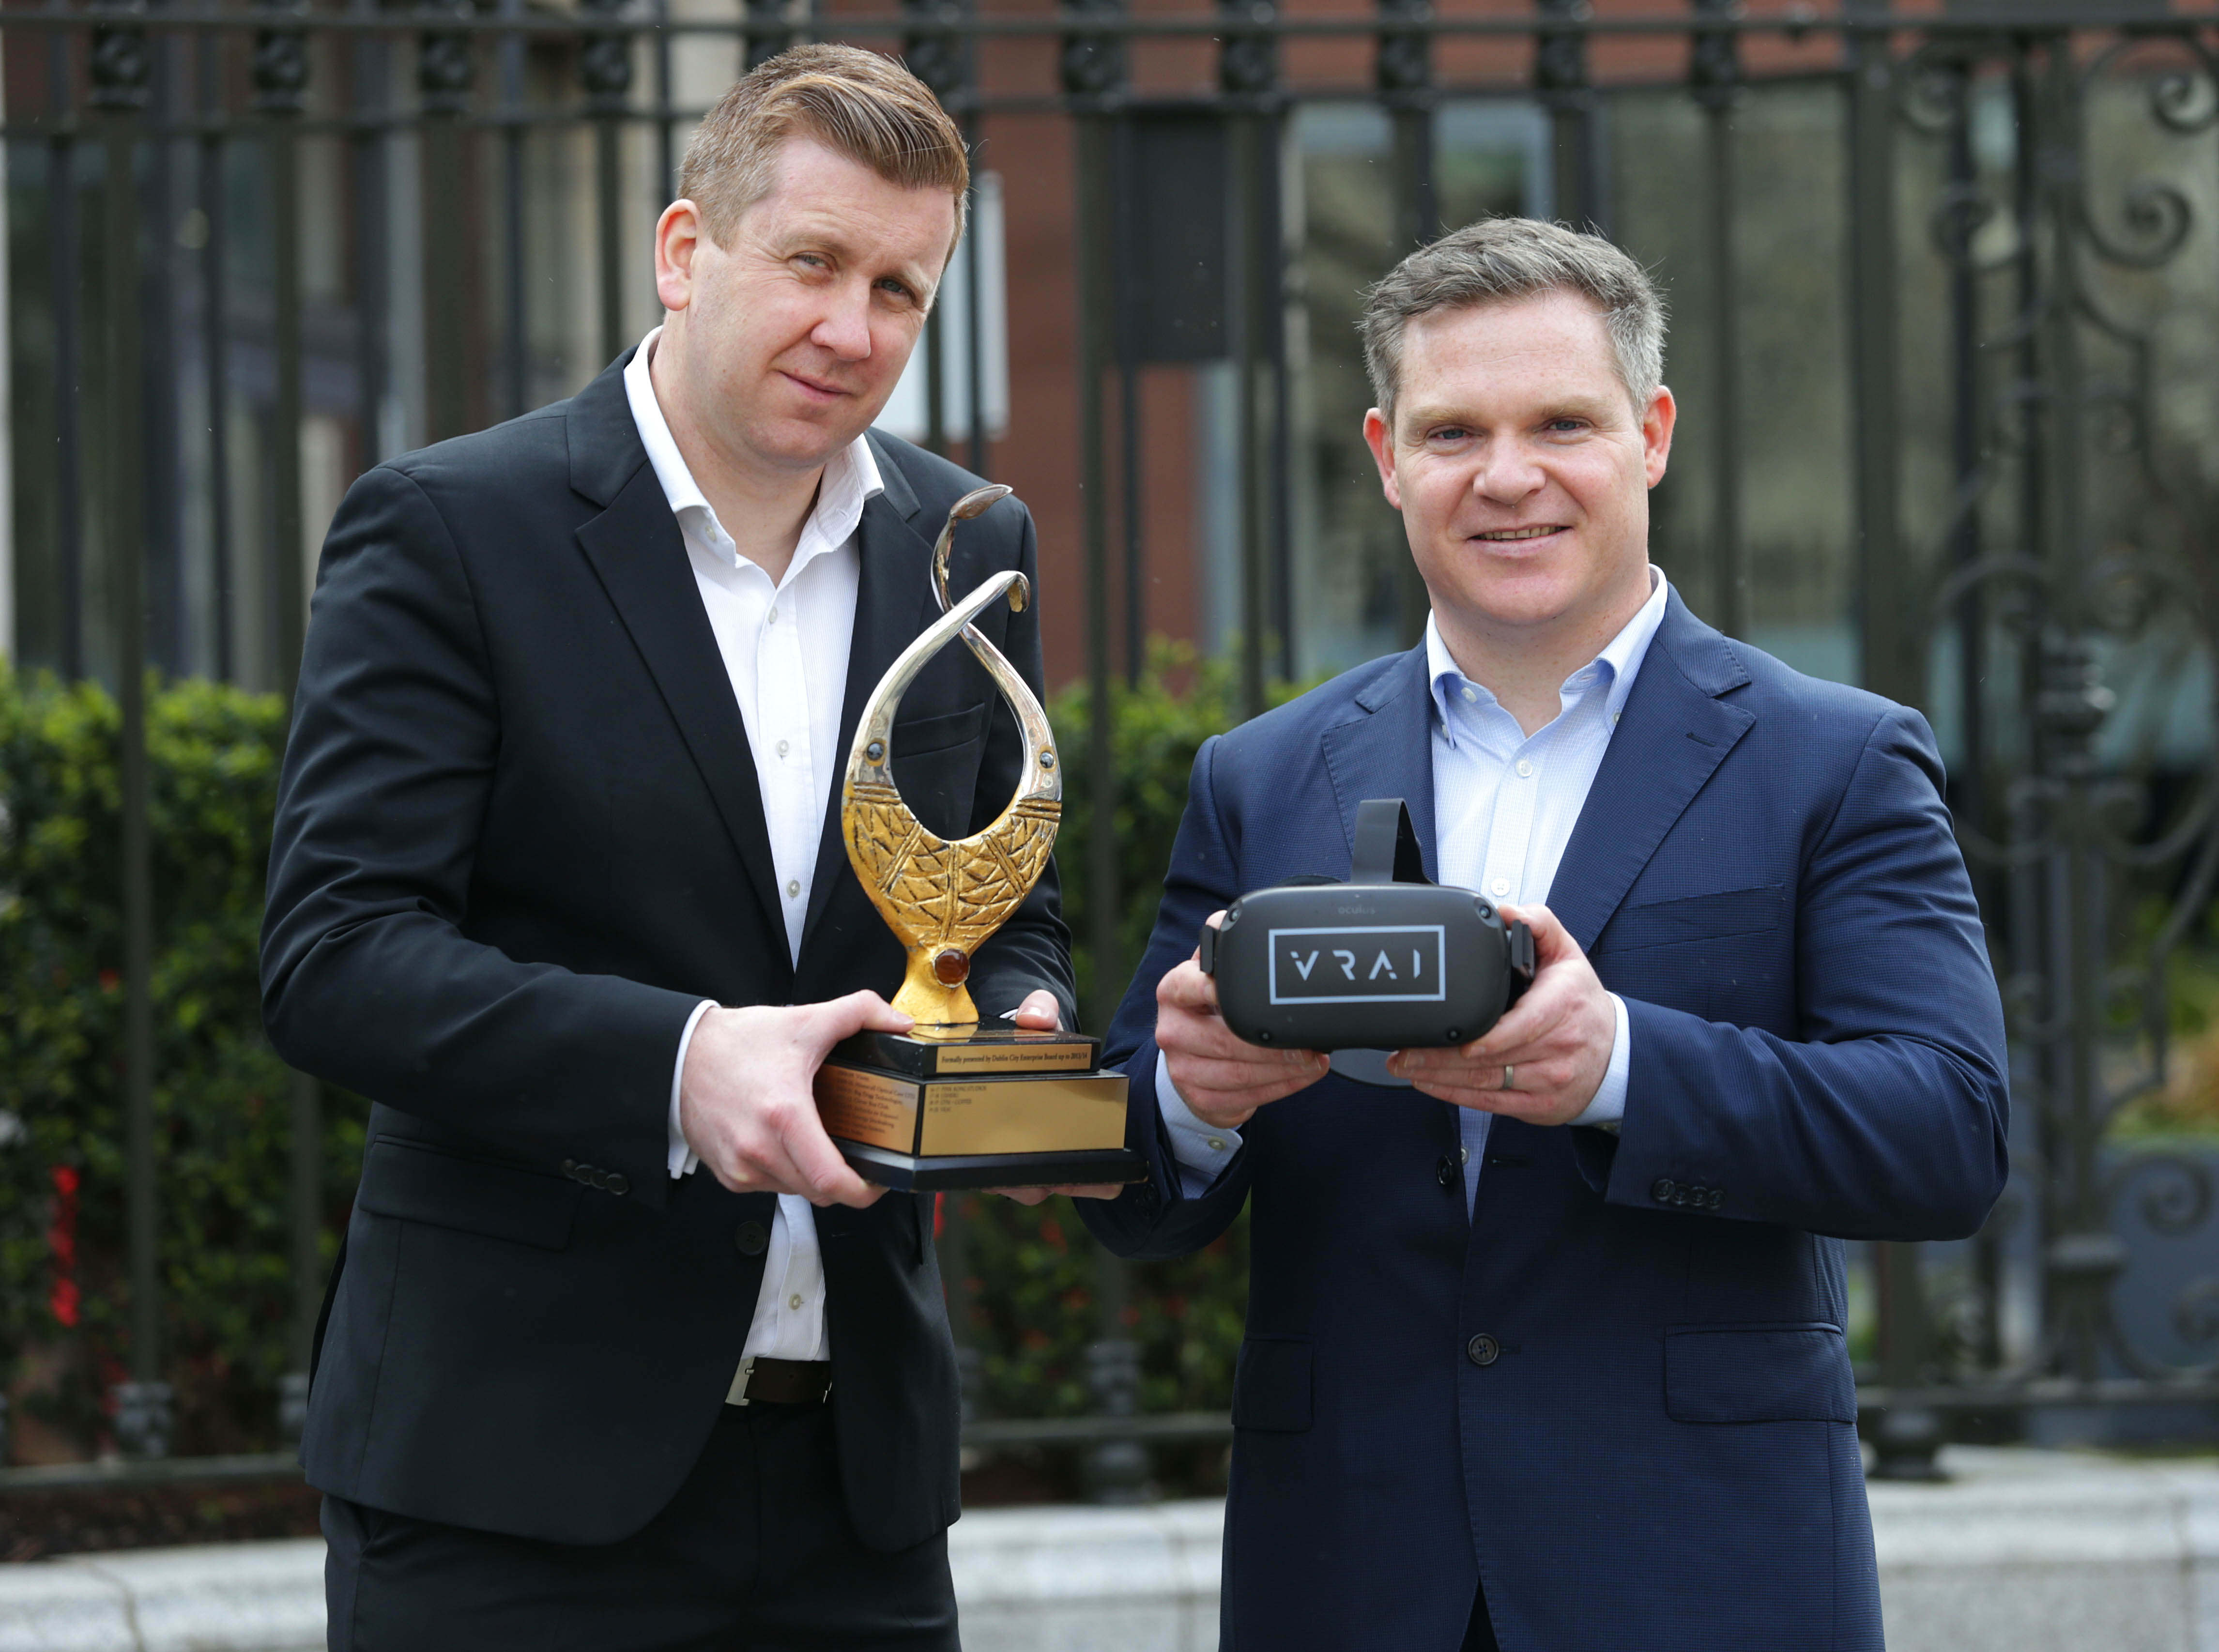 VRAI ARE DUBLIN CITY’S ENTERPRISE AWARD WINNERS FOR 2020